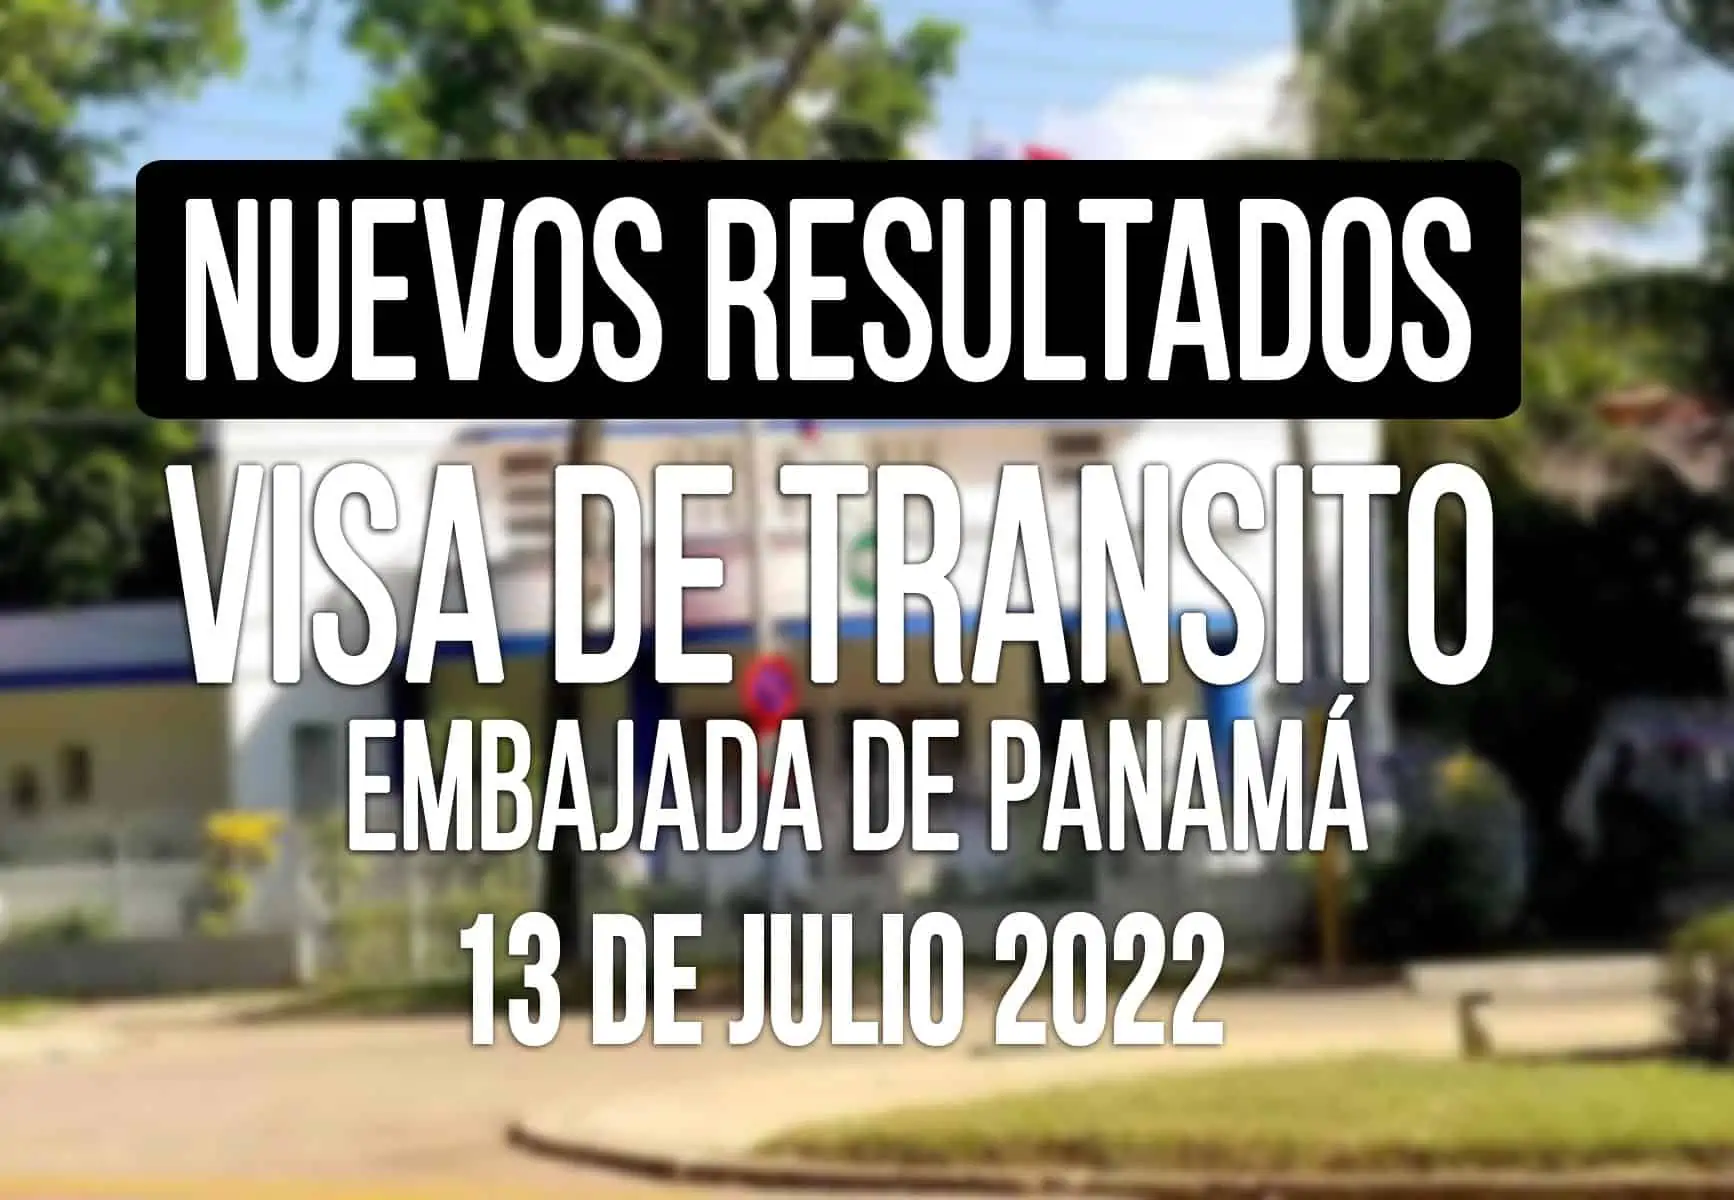 Embajada de Panamá Informa Resultados sobre Visa de Tránsito 13 DE JULIO